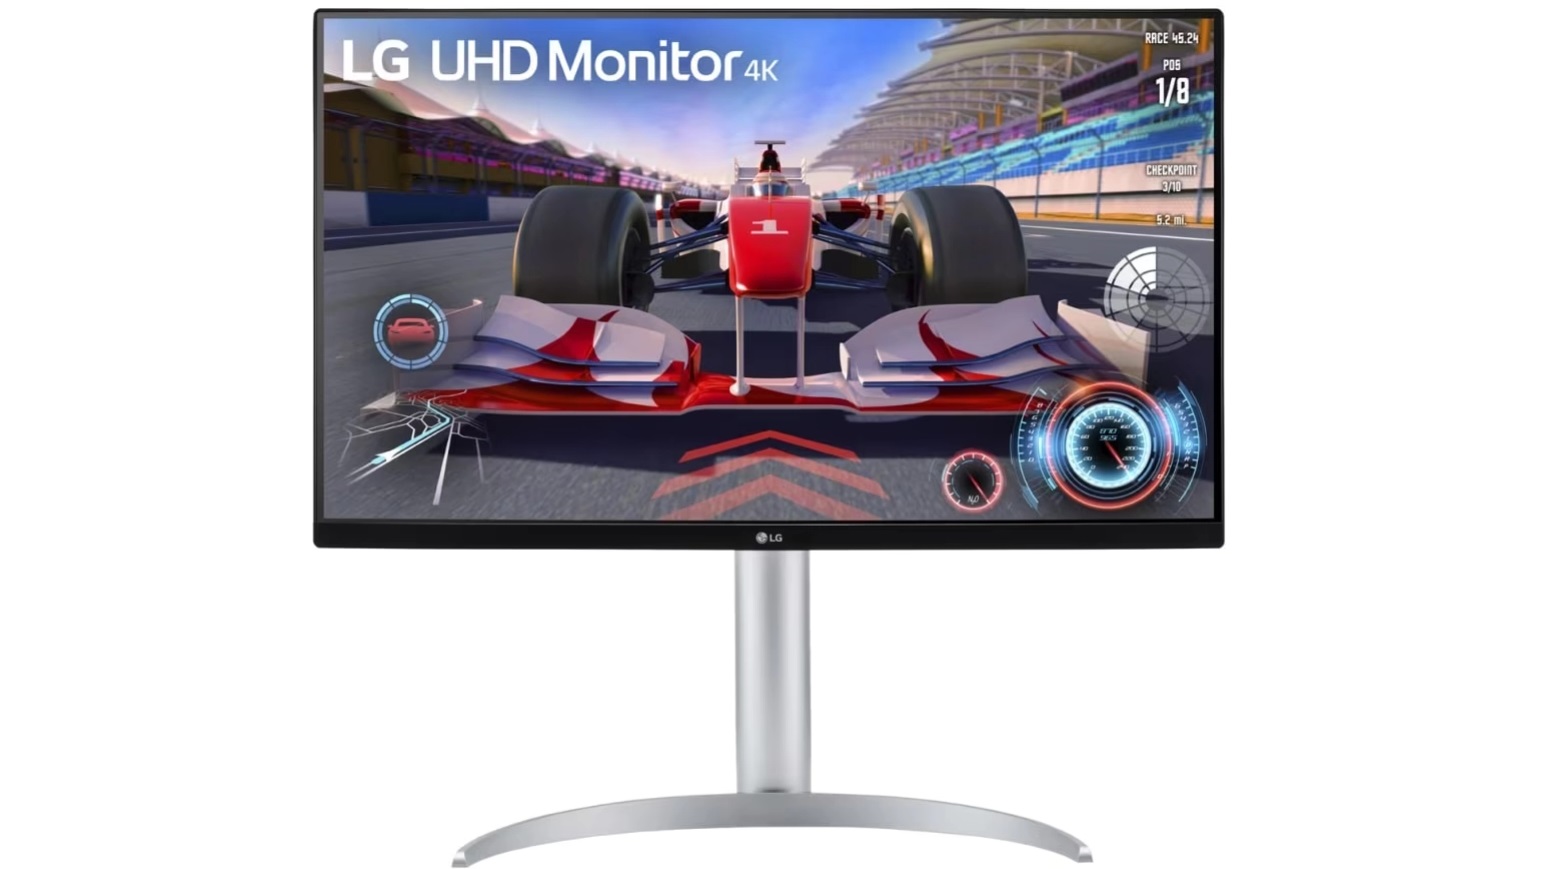 LG har annonceret en 4K-gamingskærm med 144Hz billedfrekvens, HDMI 2.1 og DisplayPort 1.4